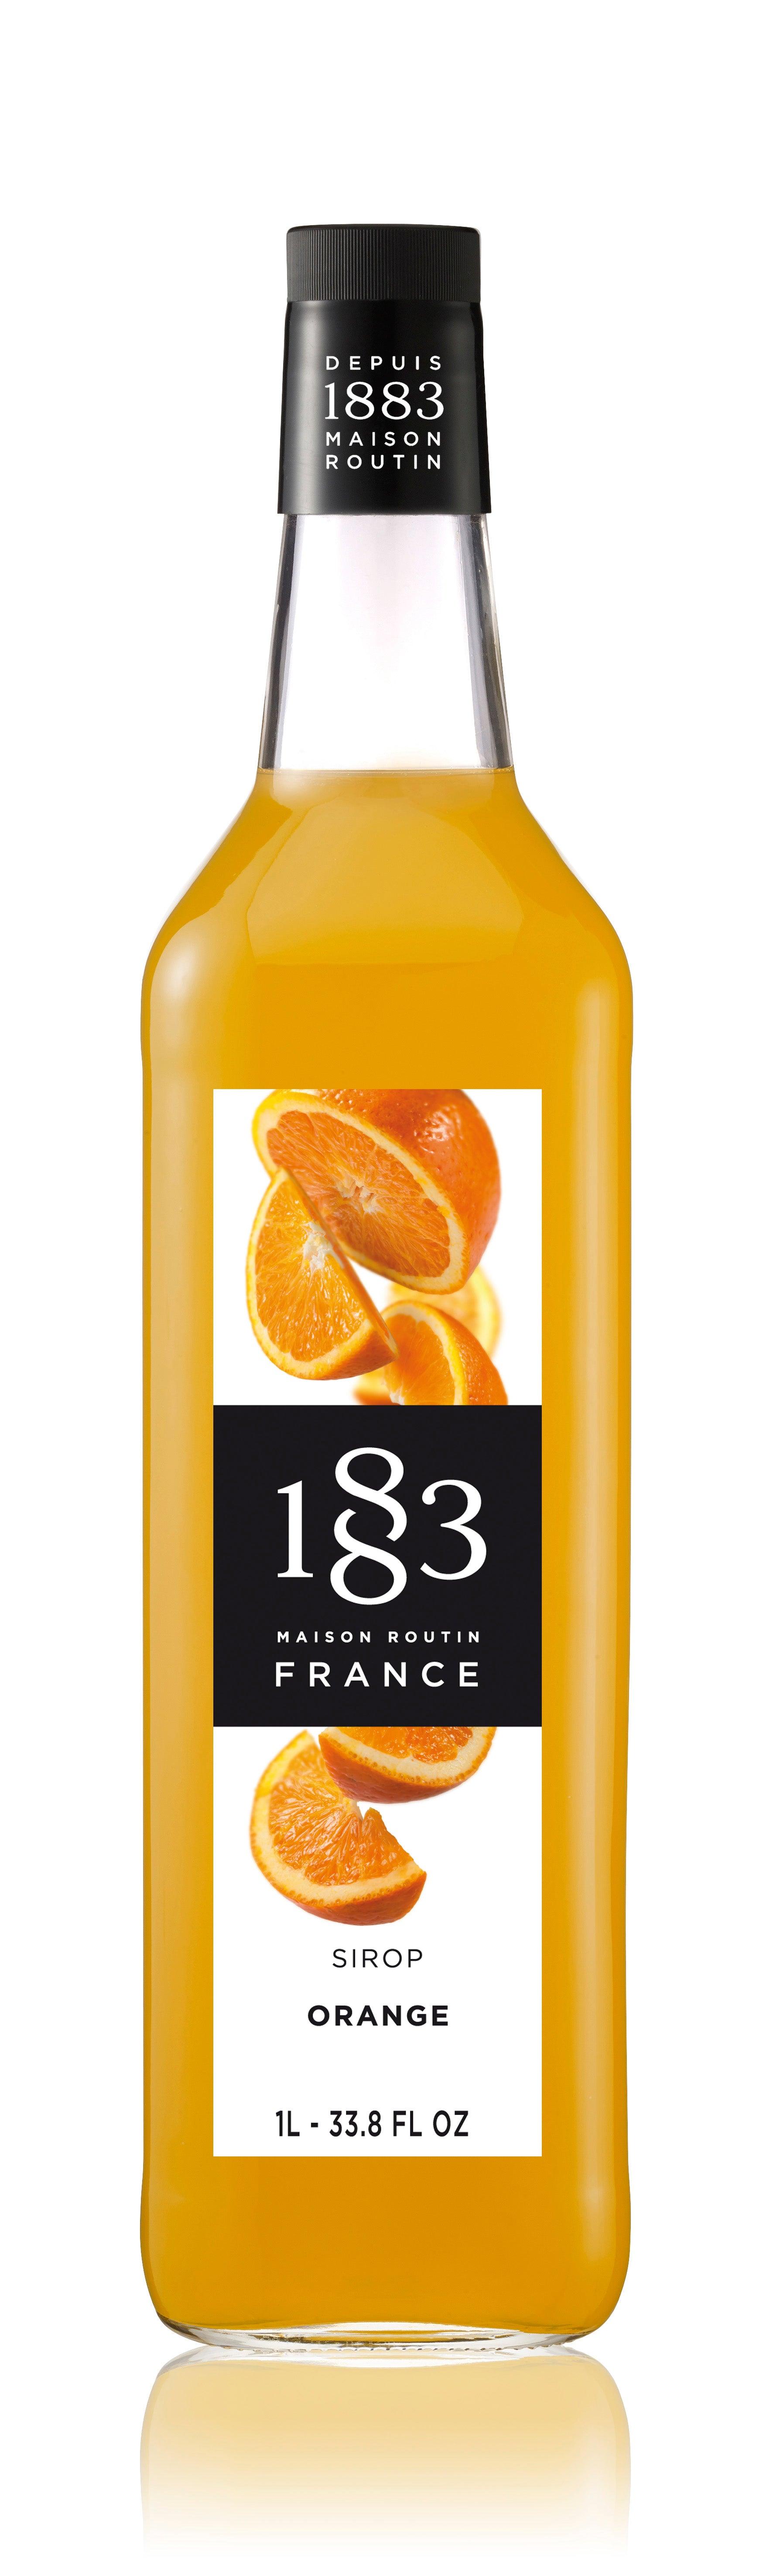 1883 Maison Routin Syrup - 1 Litre Glass Bottle - Orange Flavour - Vending Superstore